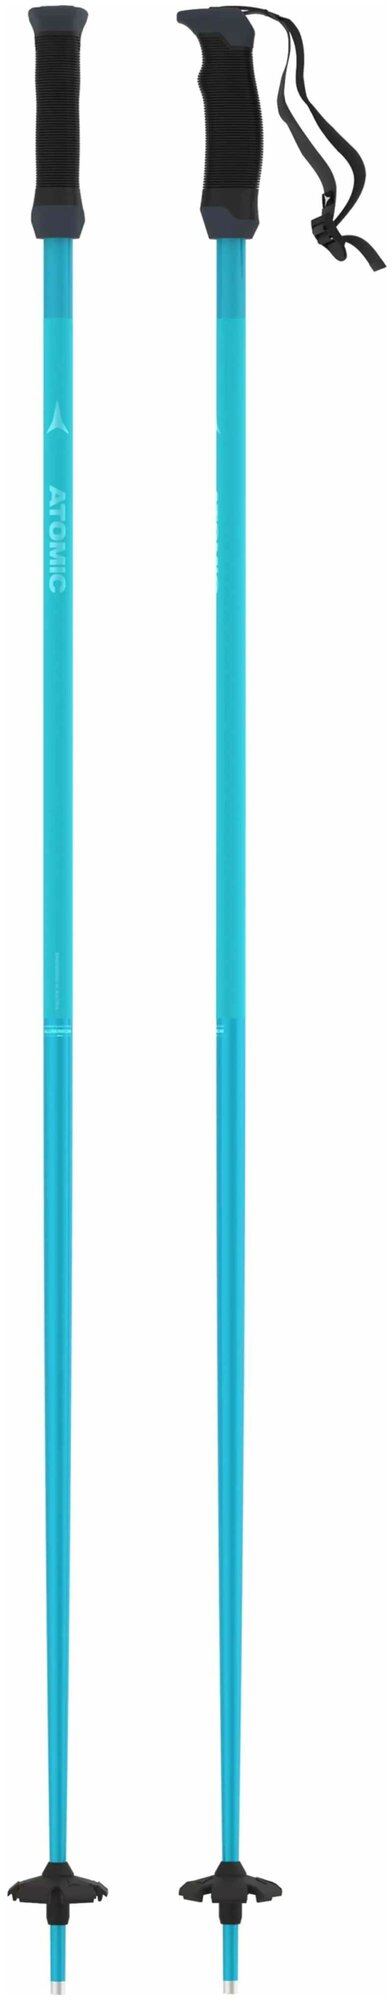 Горнолыжные палки ATOMIC AMT SQS Scuba Blue (см:125)